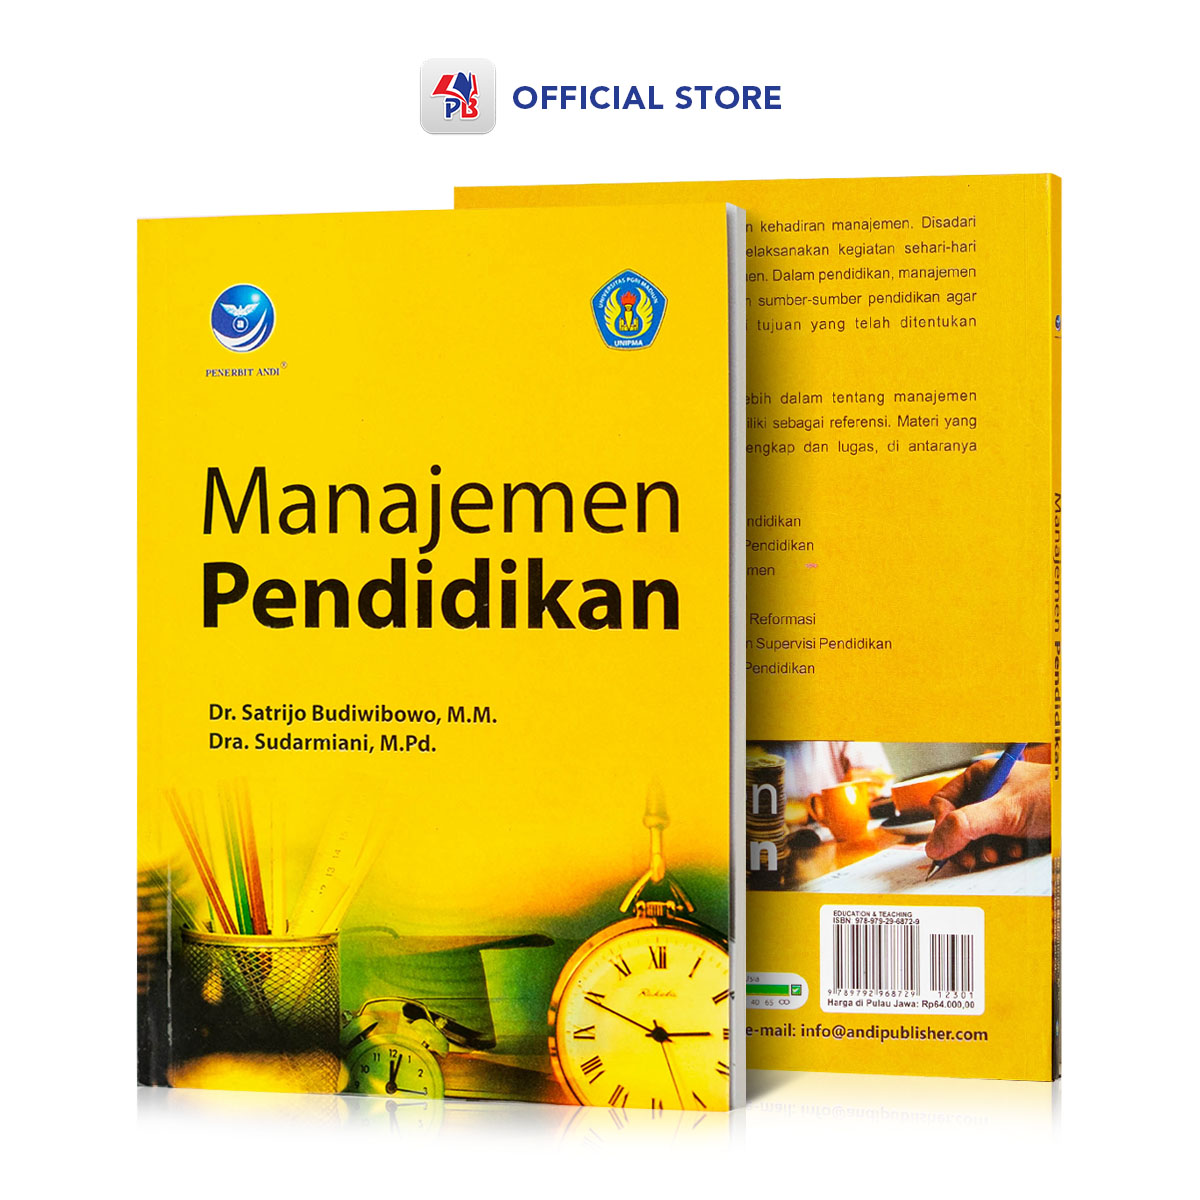 Buku Belajar Manajemen Pendidikan Untuk Umum Belajar Mengelola Sekolah Secara Efektif Lazada 0609